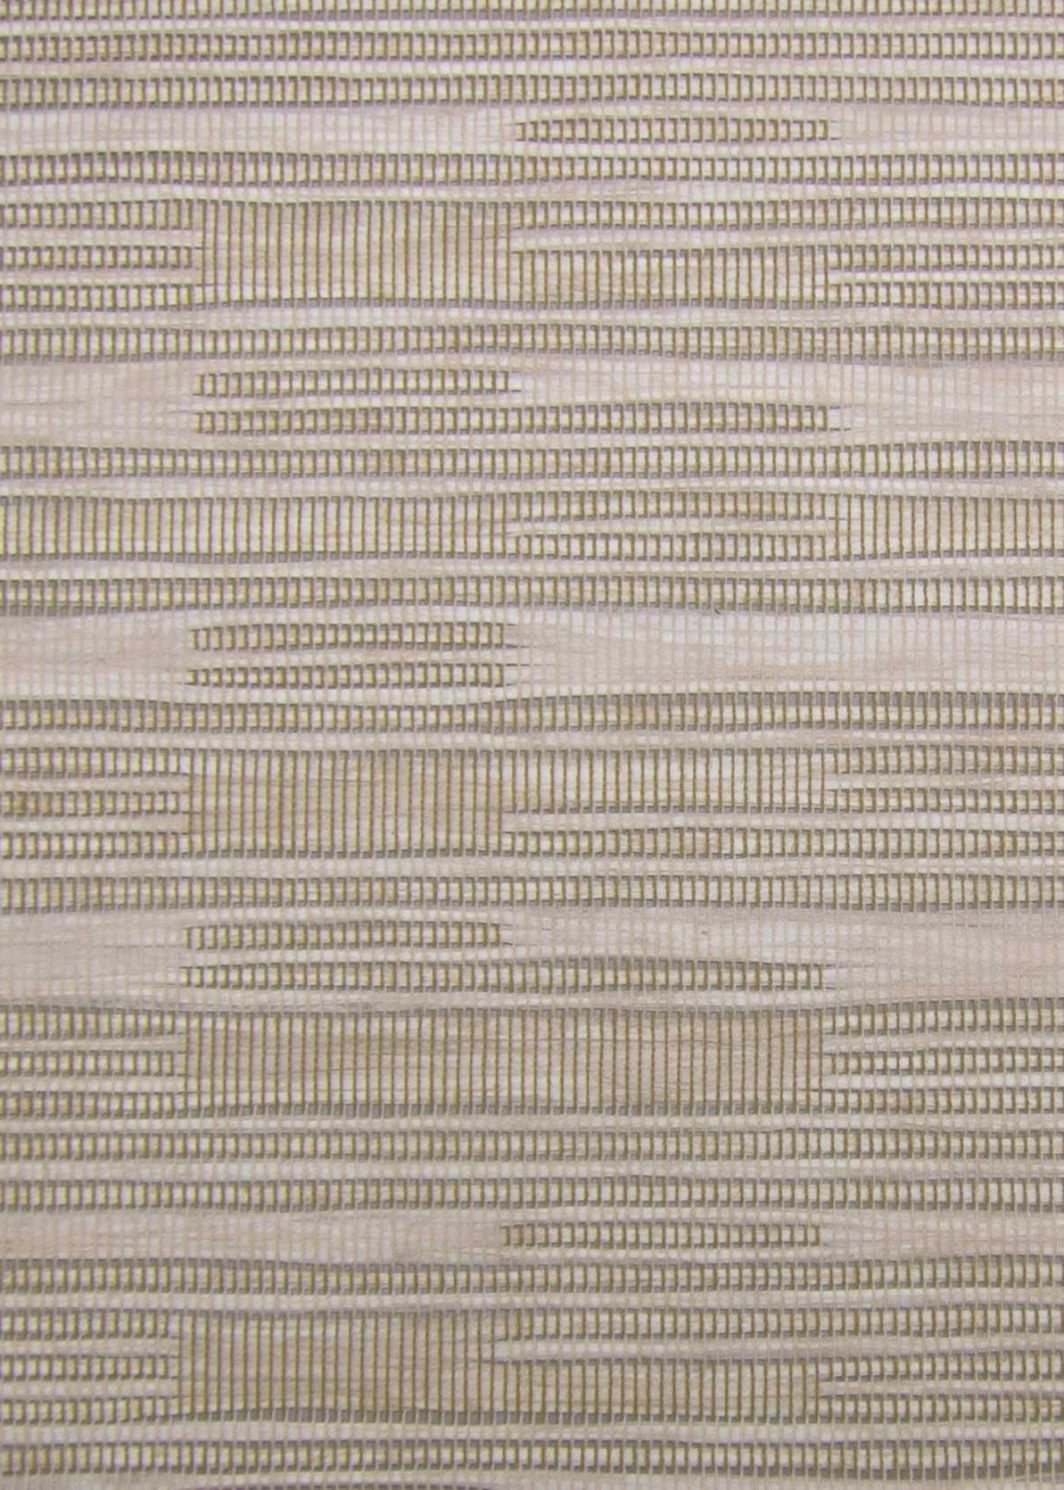 Cordless Bamboo/Woven Wood Shades - PaperShade-Tan